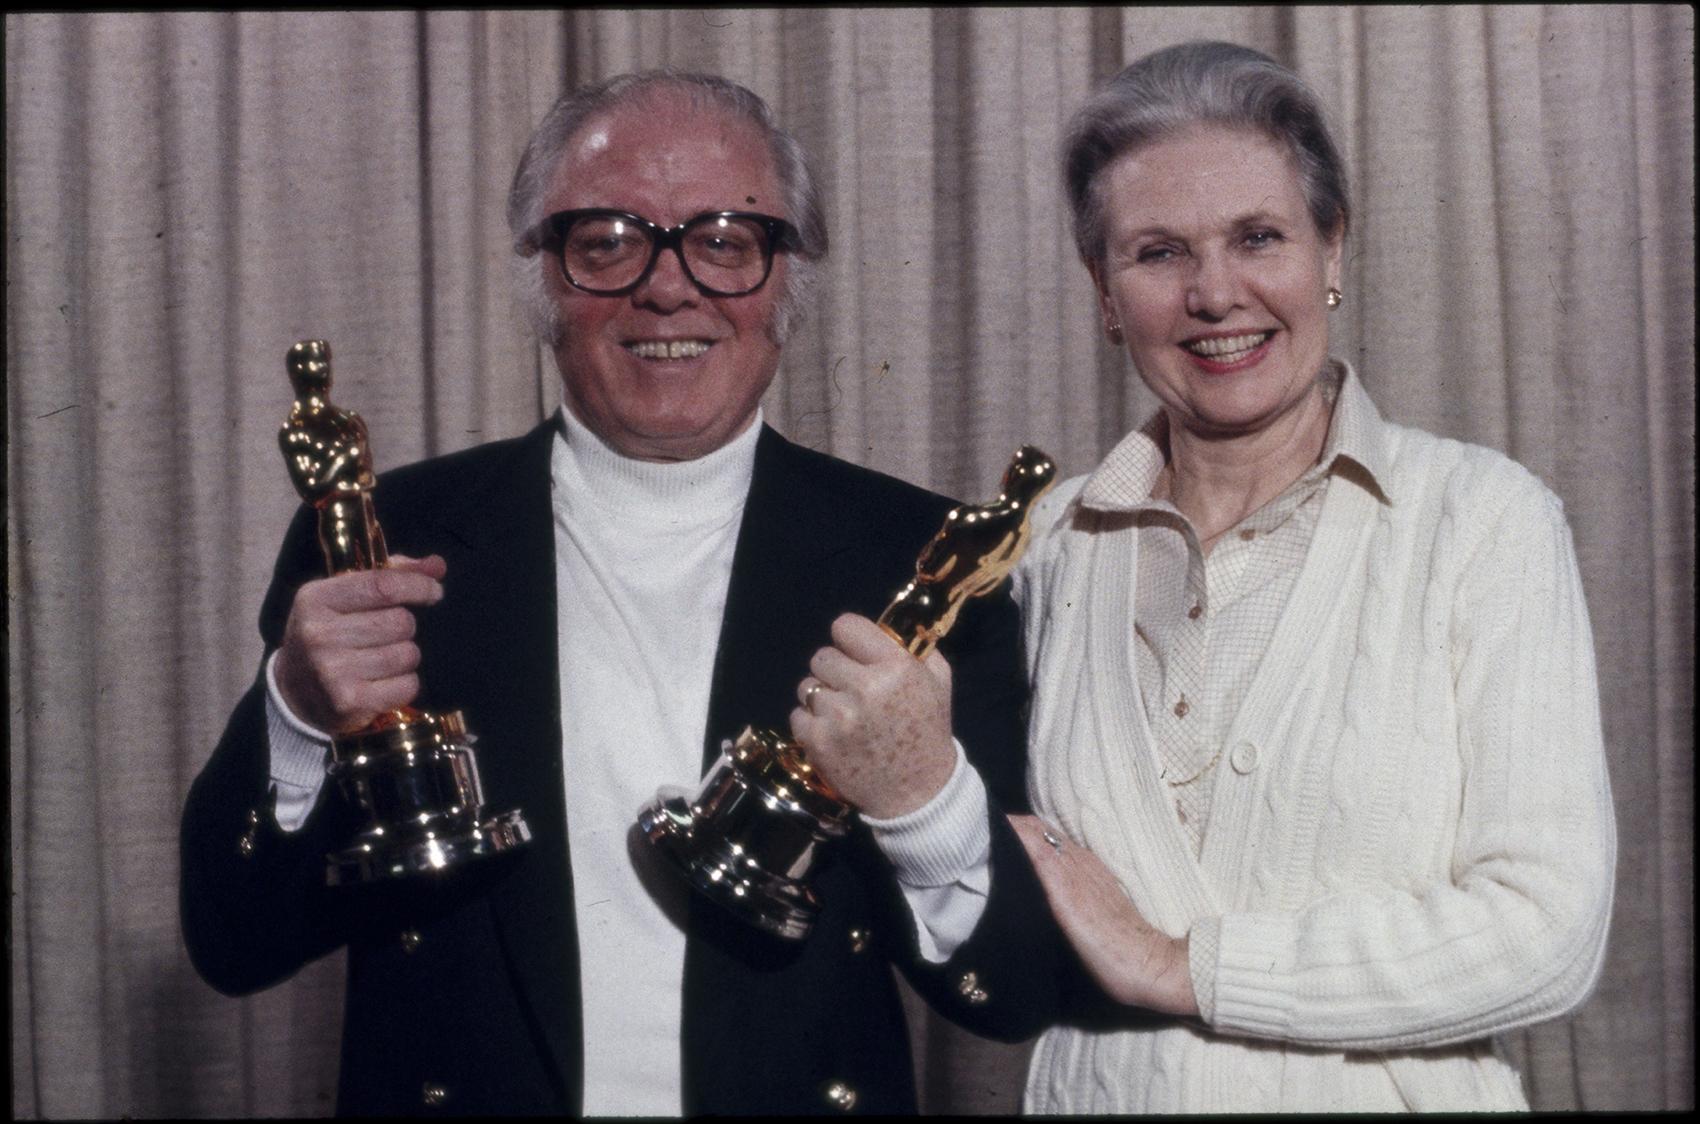 Richard Attenborough med sina Oscarsstatyetter för filmen ”Gandhi”, tillsammans med Sheila 1983.